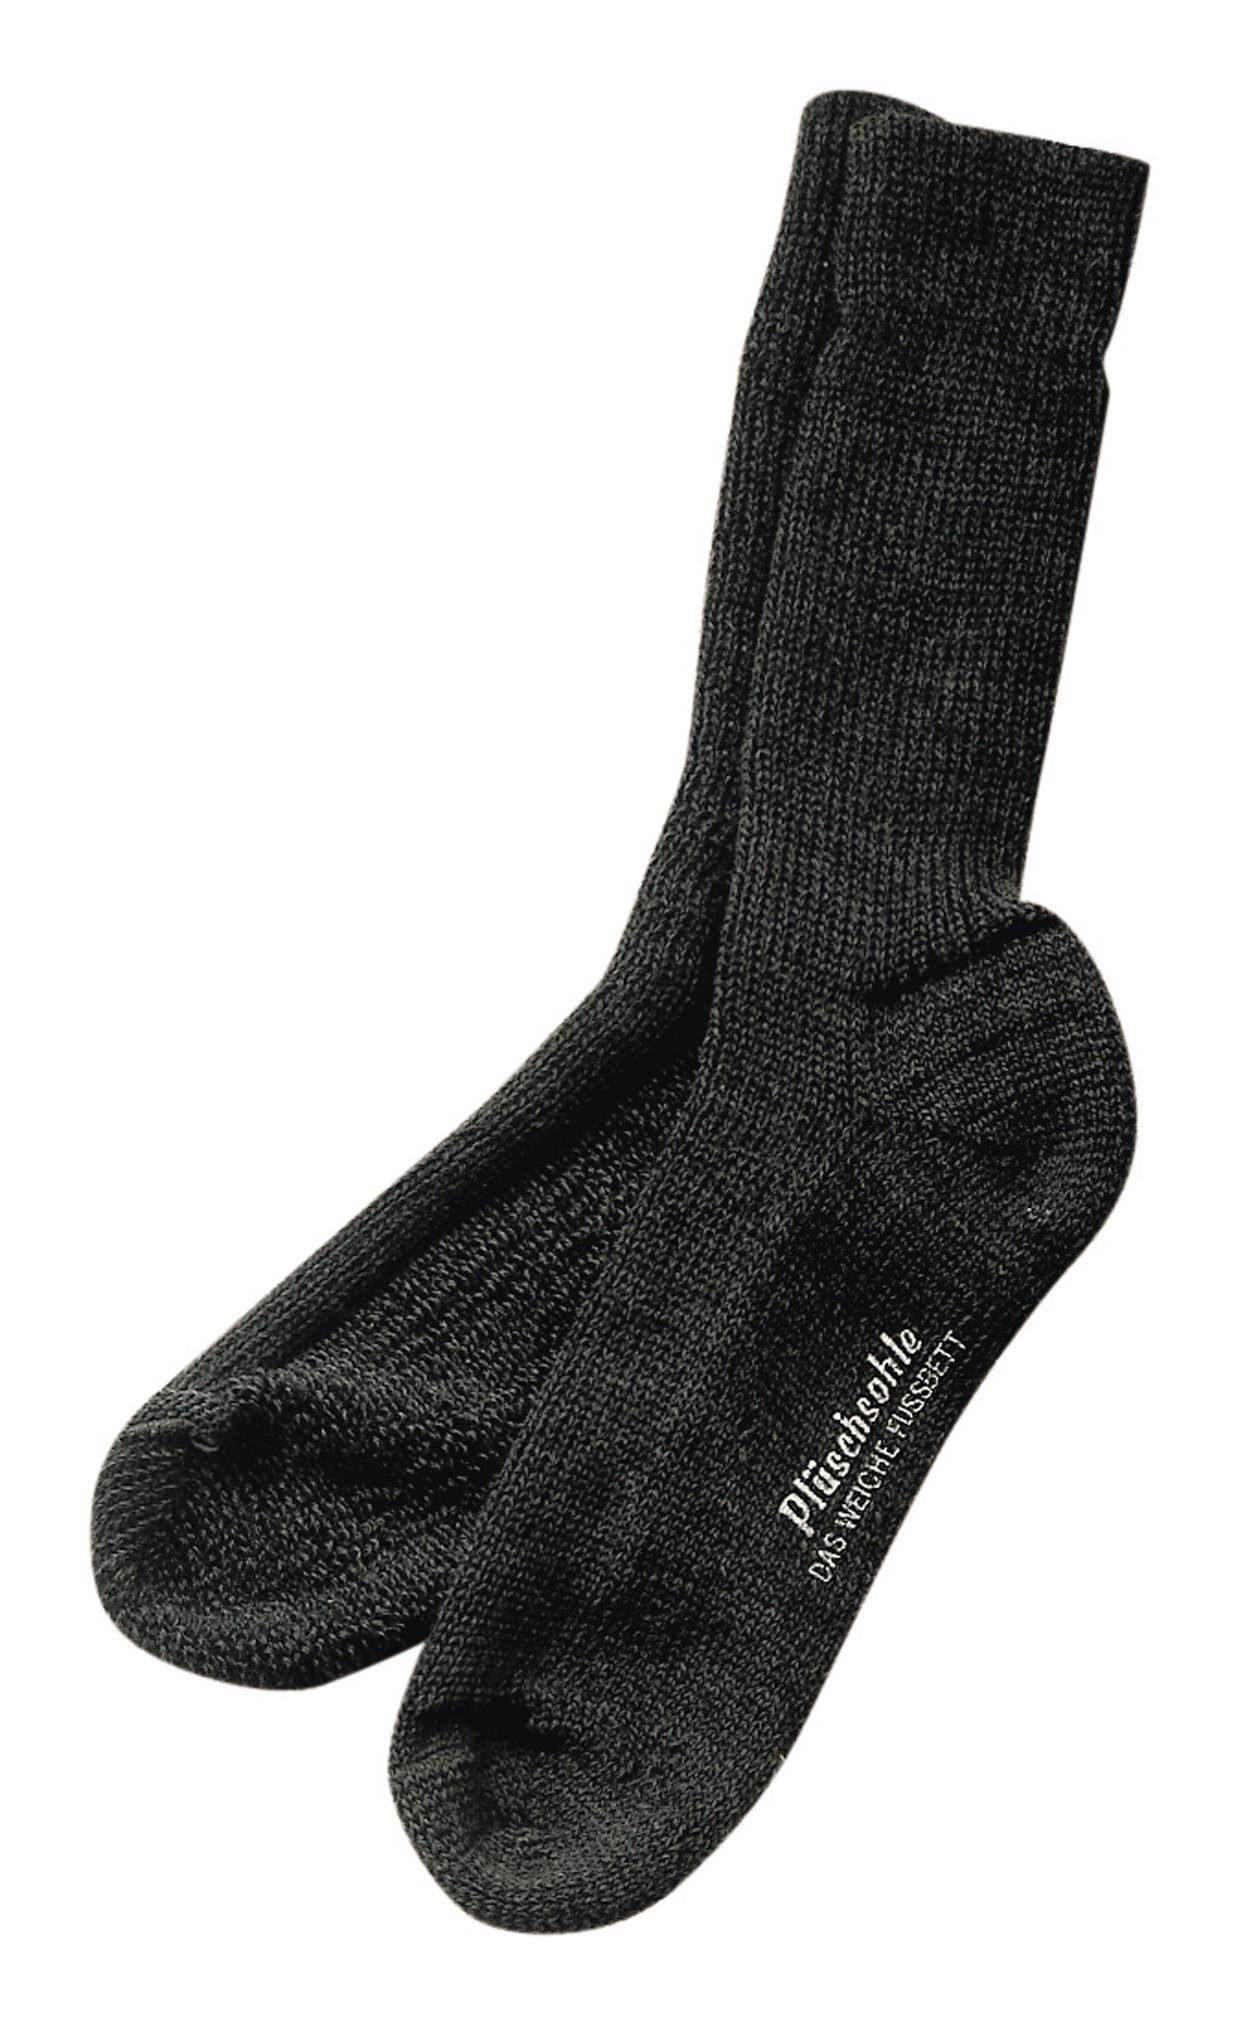 fortis Socken Gesundheitssocke Größe 39 - 40 anthrazit